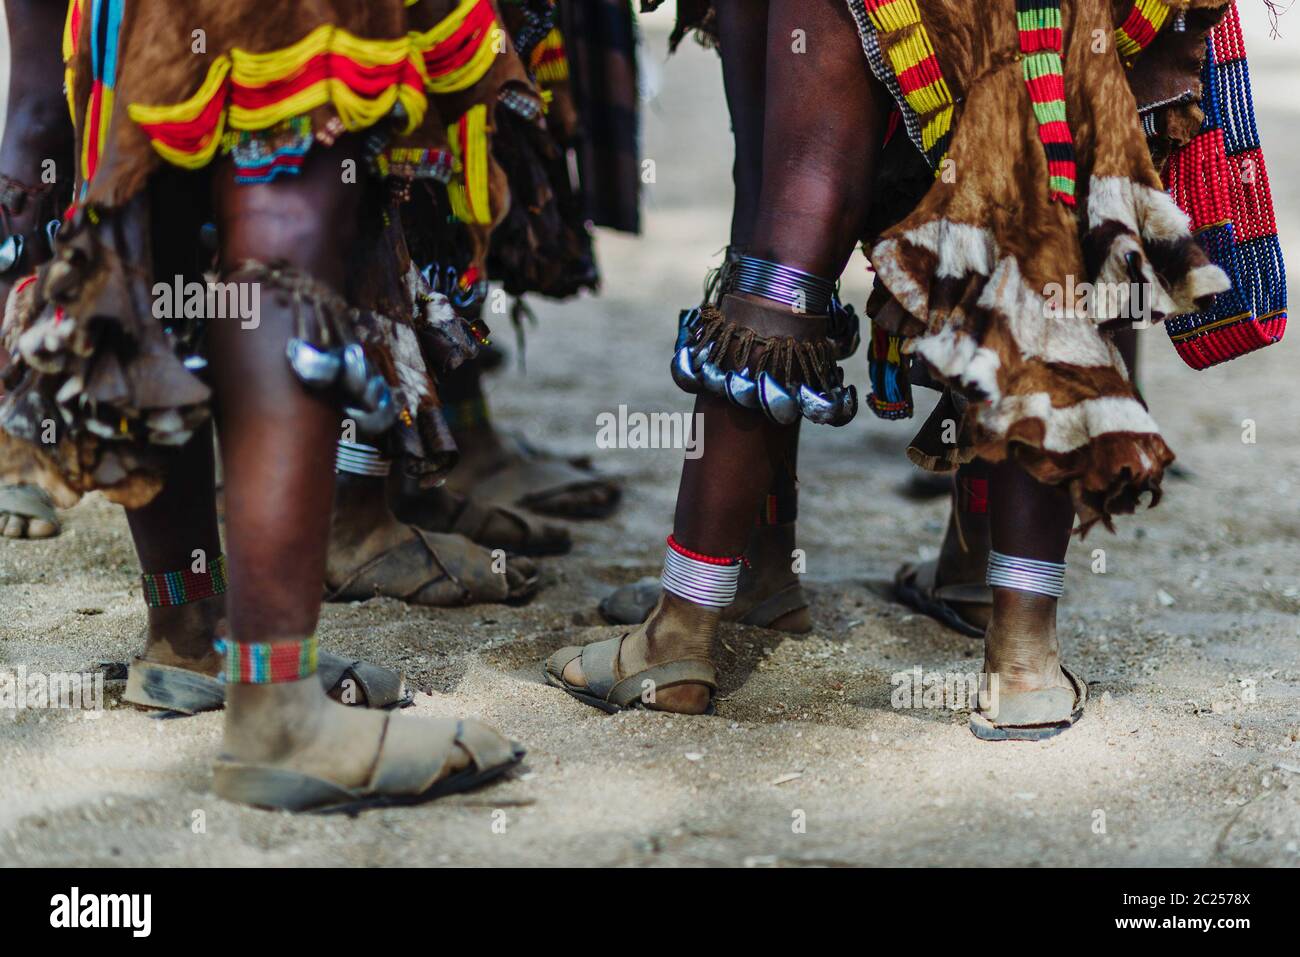 La cérémonie de saut de taureau par les membres non identifiés de la tribu Hamer dans la vallée d'Omo, en Éthiopie Banque D'Images